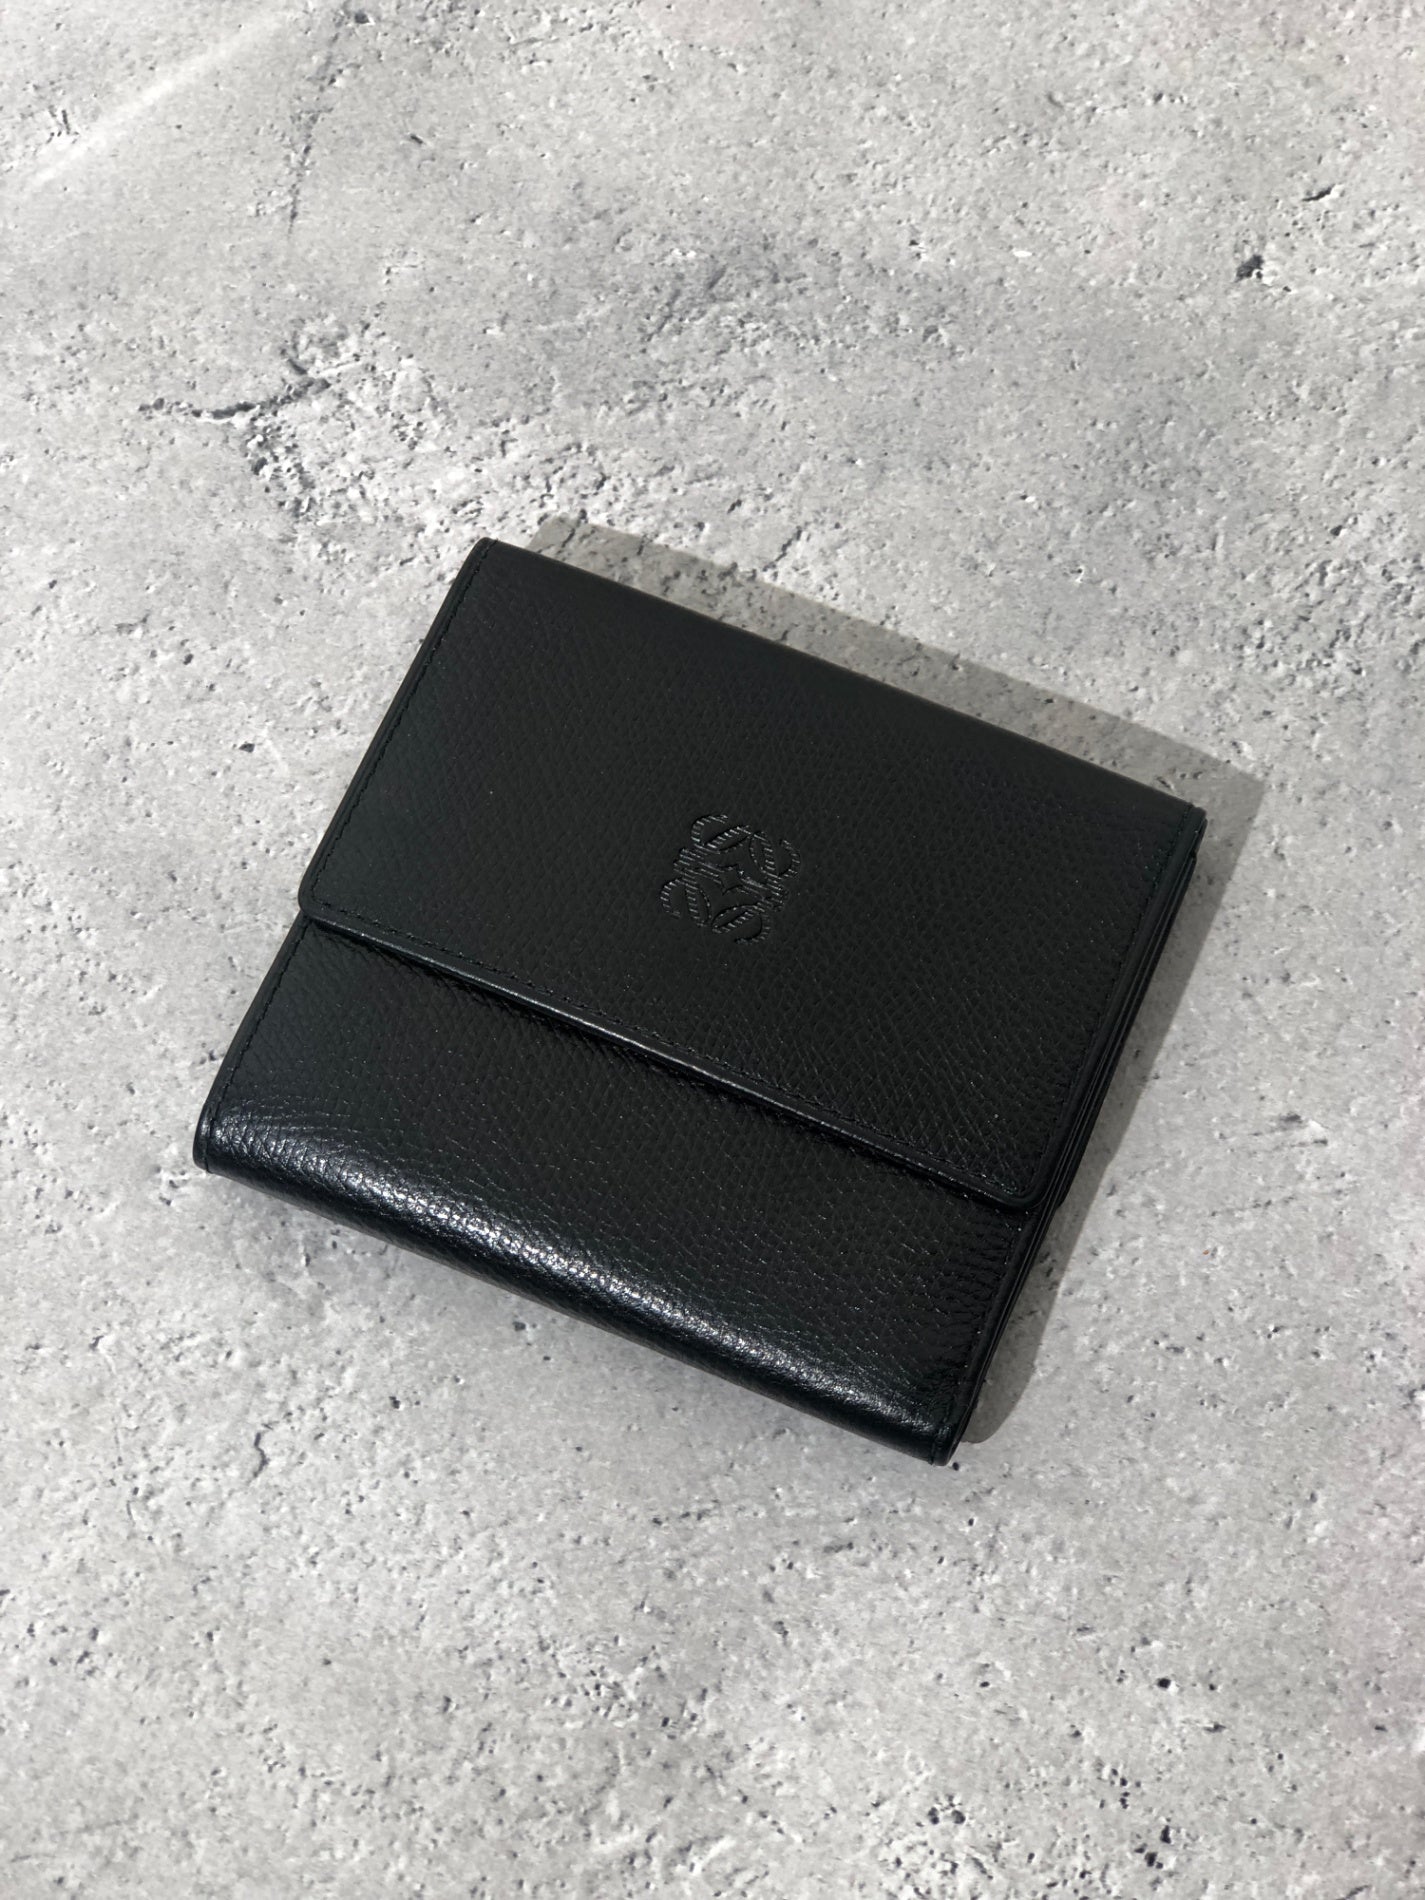 LOEWE Anagram Logo Leather Trifold Wallet Black Vintage i27f3r